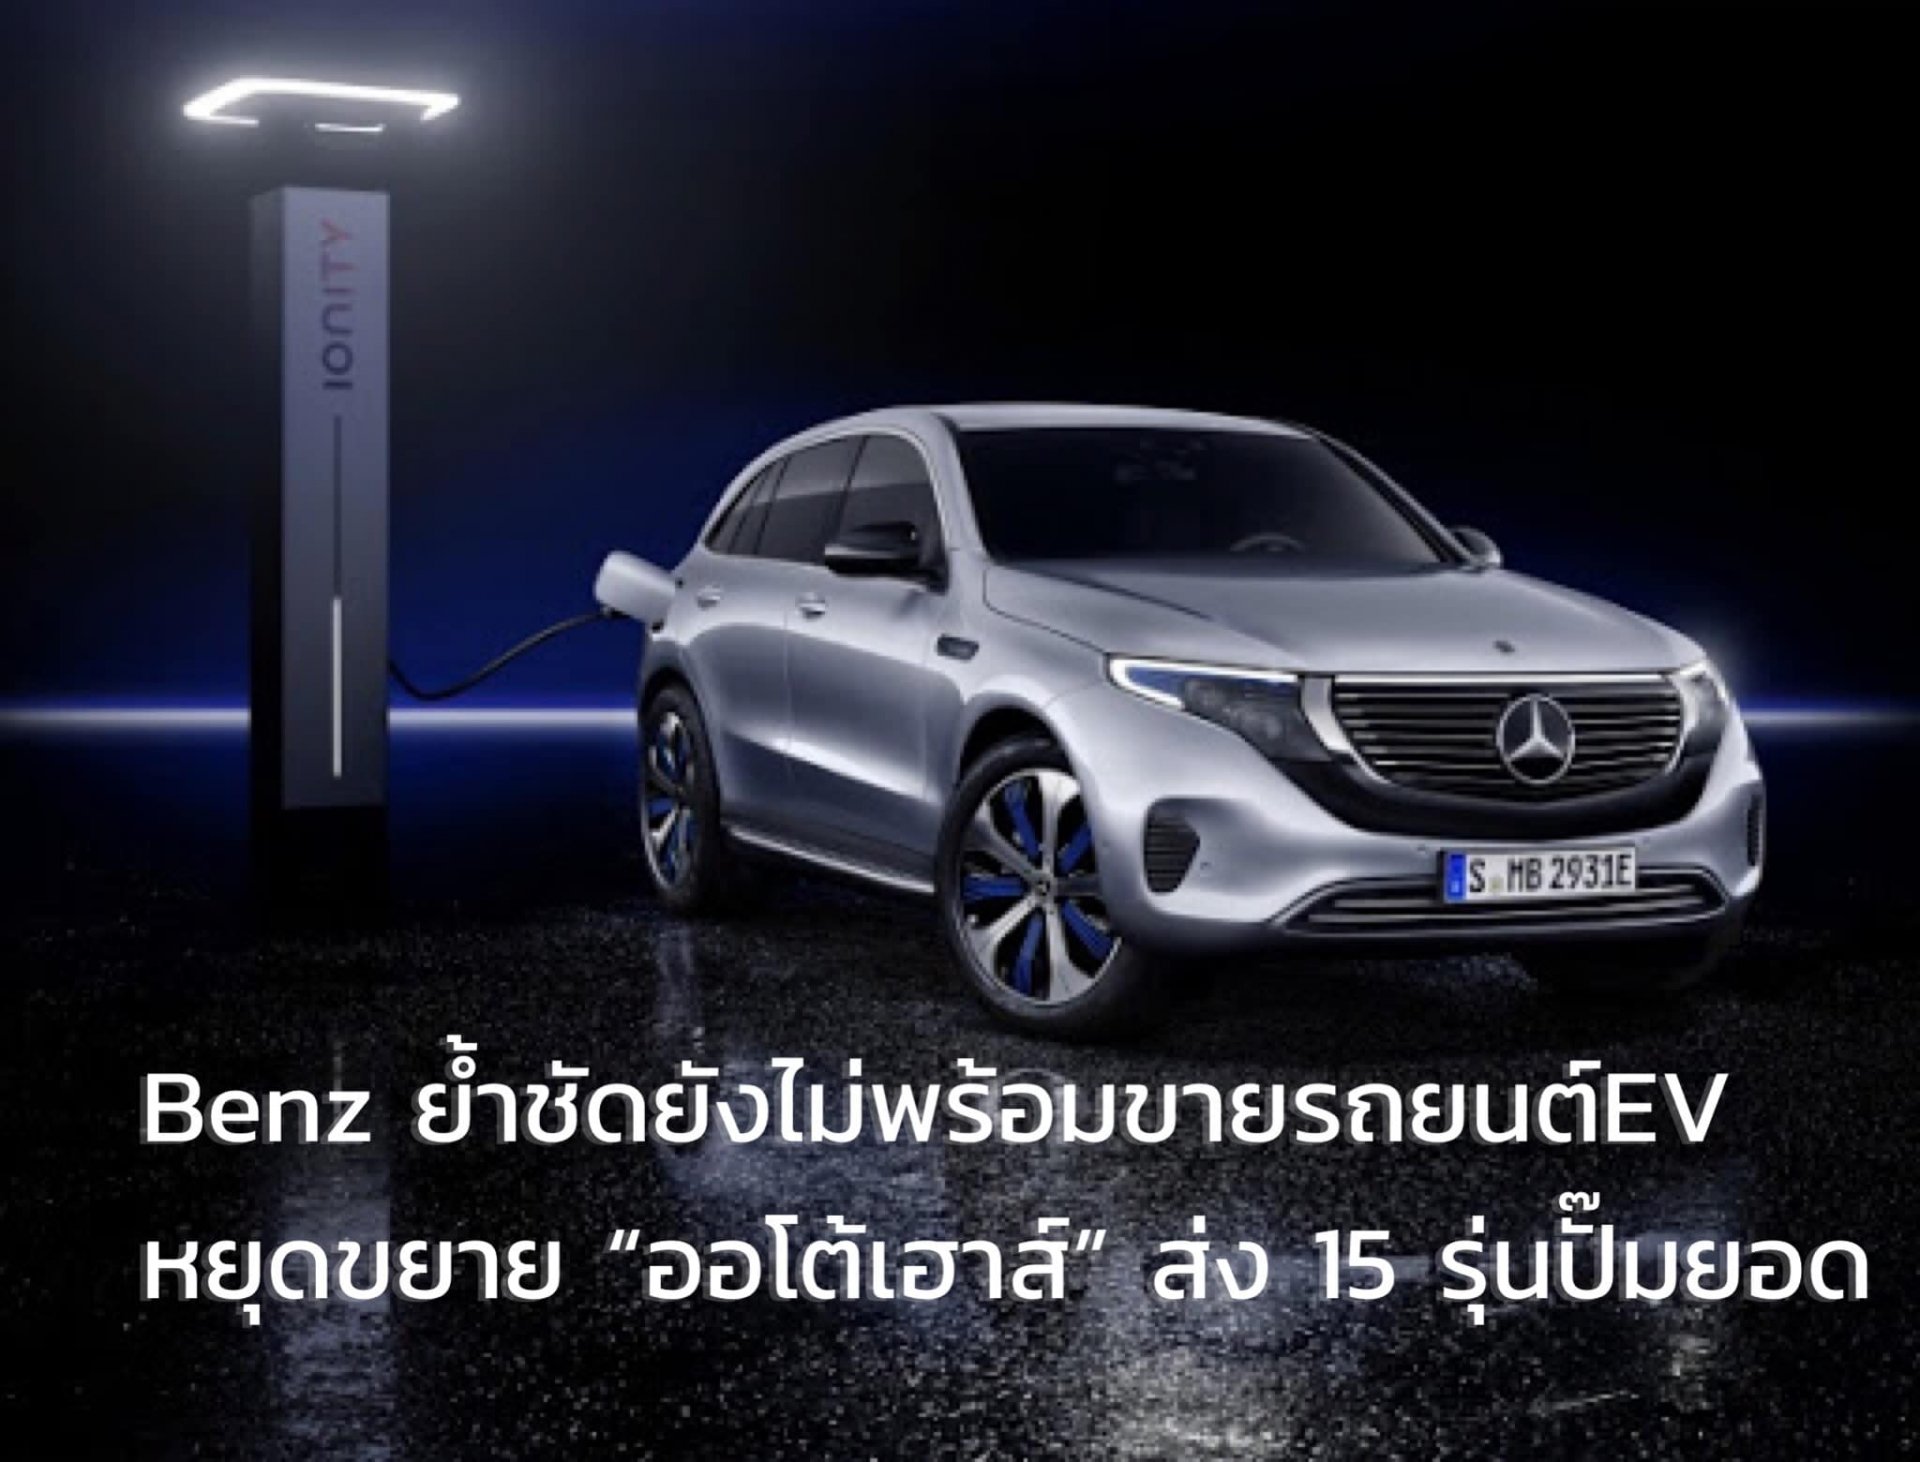 นายโรลันด์ โฟล์เกอร์ ประธานบริหาร บริษัท เมอร์เซเดส-เบนซ์ (ประเทศไทย) จำกัด เปิดเผยถึงความชัดเจนของแผนงานการทำตลาดรถยนต์ไฟฟ้าในประเทศไทยว่า ภายในปี 2564 จะยังไม่มีรถยนต์ไฟฟ้าจำหน่าย แต่การลงทุนพร้อมทั้งขึ้นไลน์ผลิตและทำตลาดในประเทศไทยยังอยู่ในนโยบายของบริ